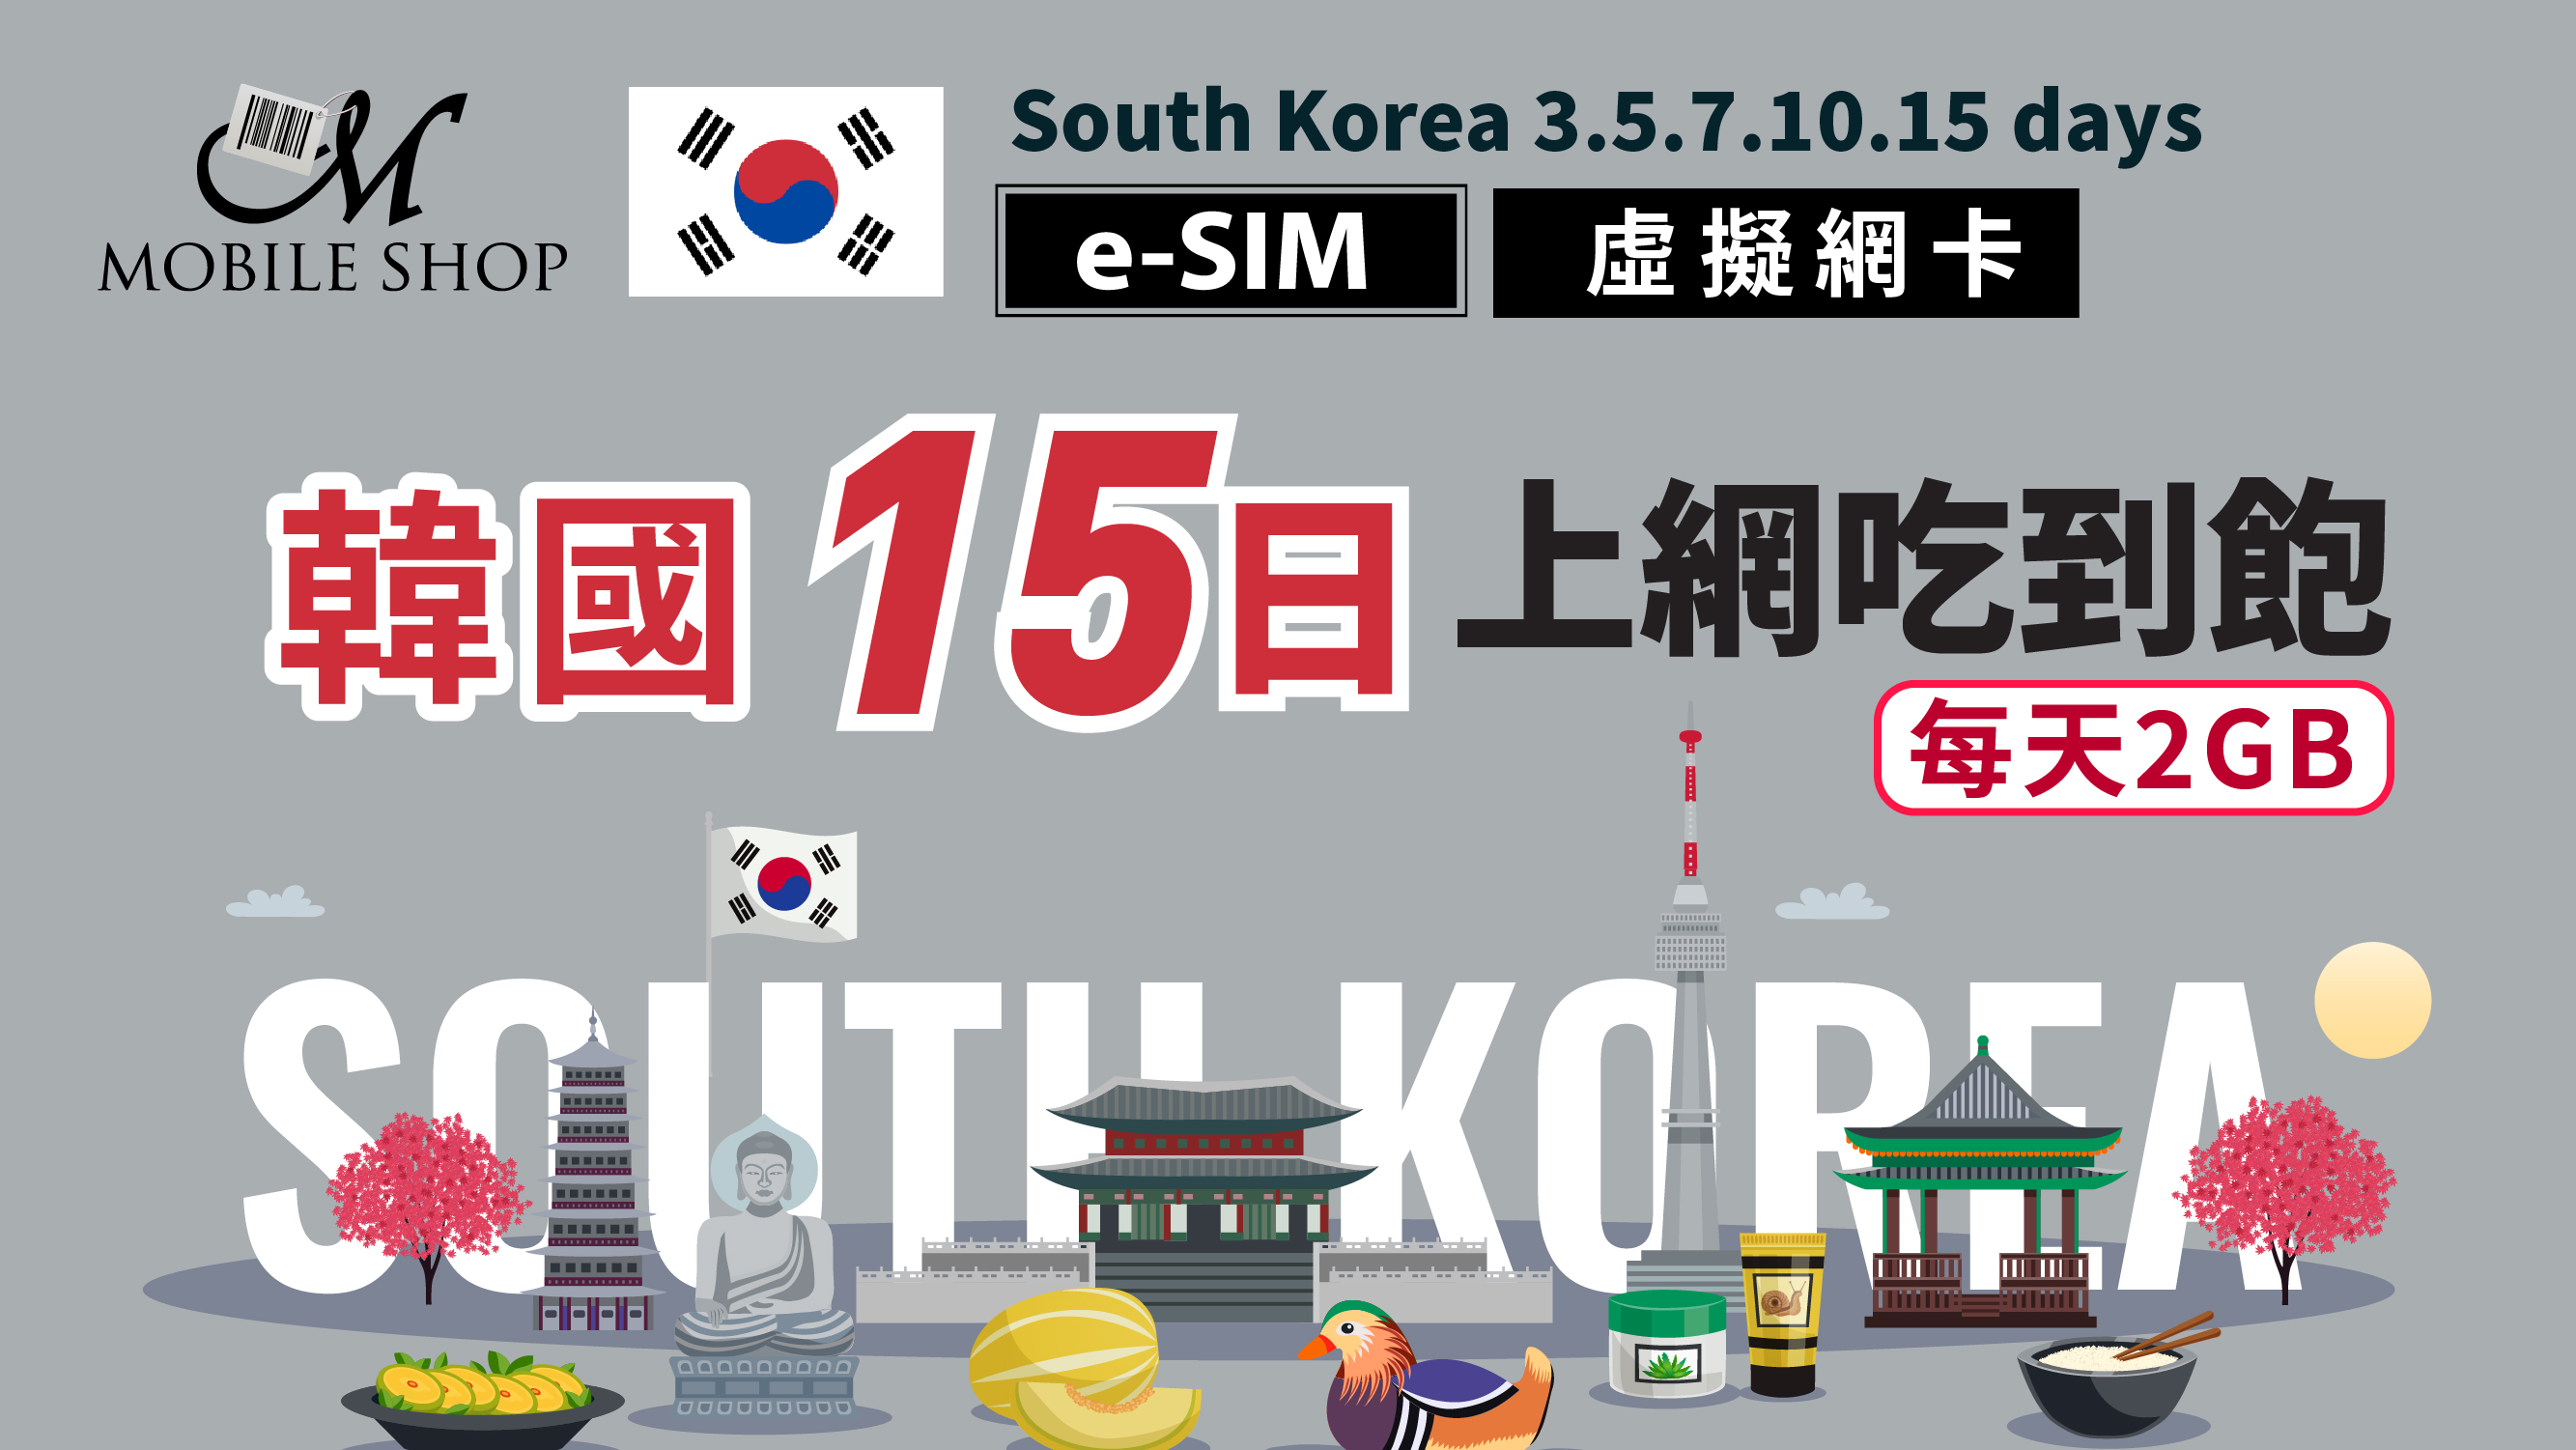 eSIM Korea 15days/2GB day unlimited data